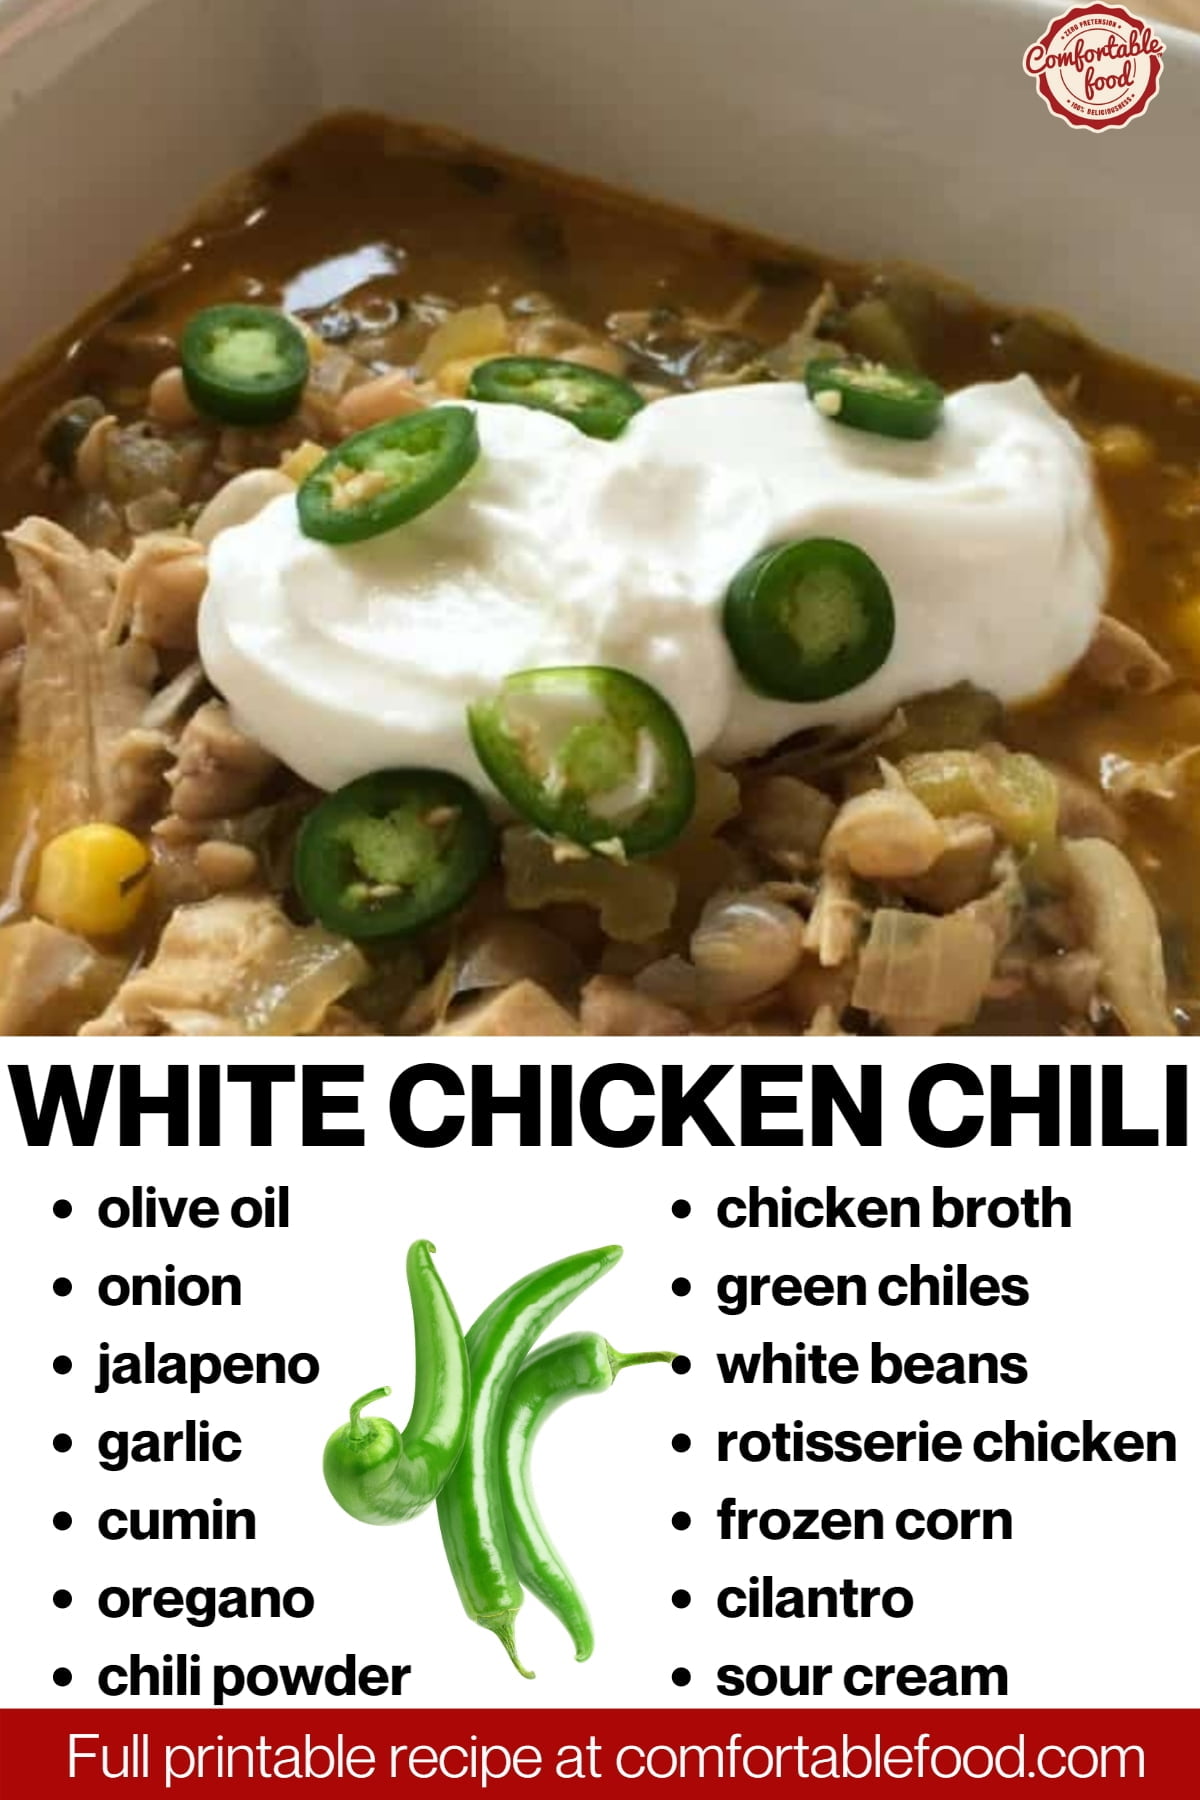 White chicken chili socials